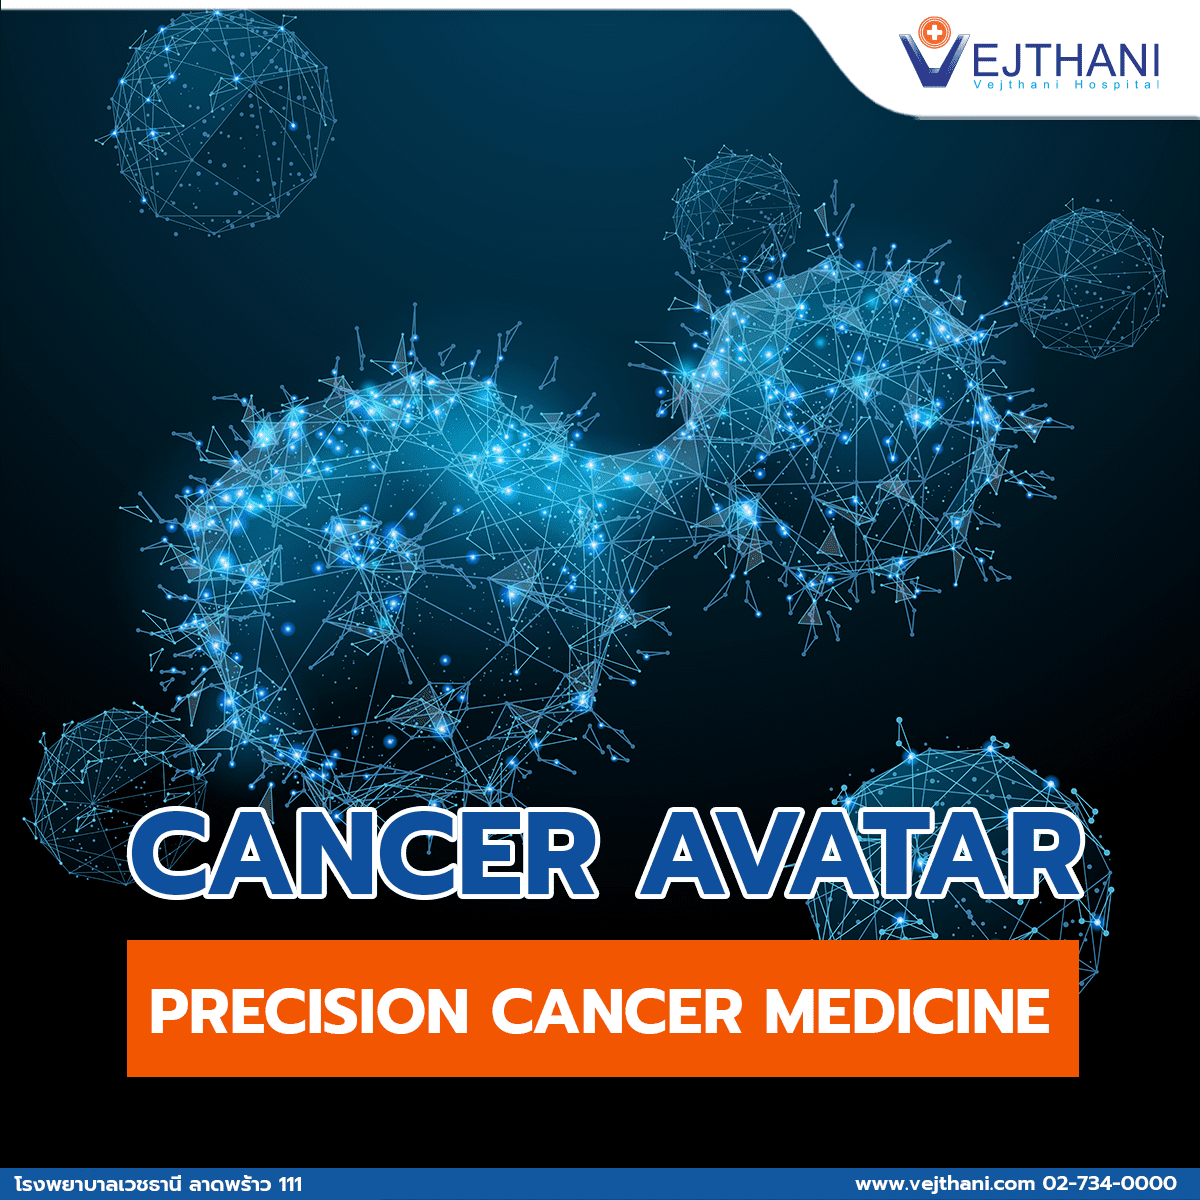 Cancer Avatar – Precision Cancer Medicine